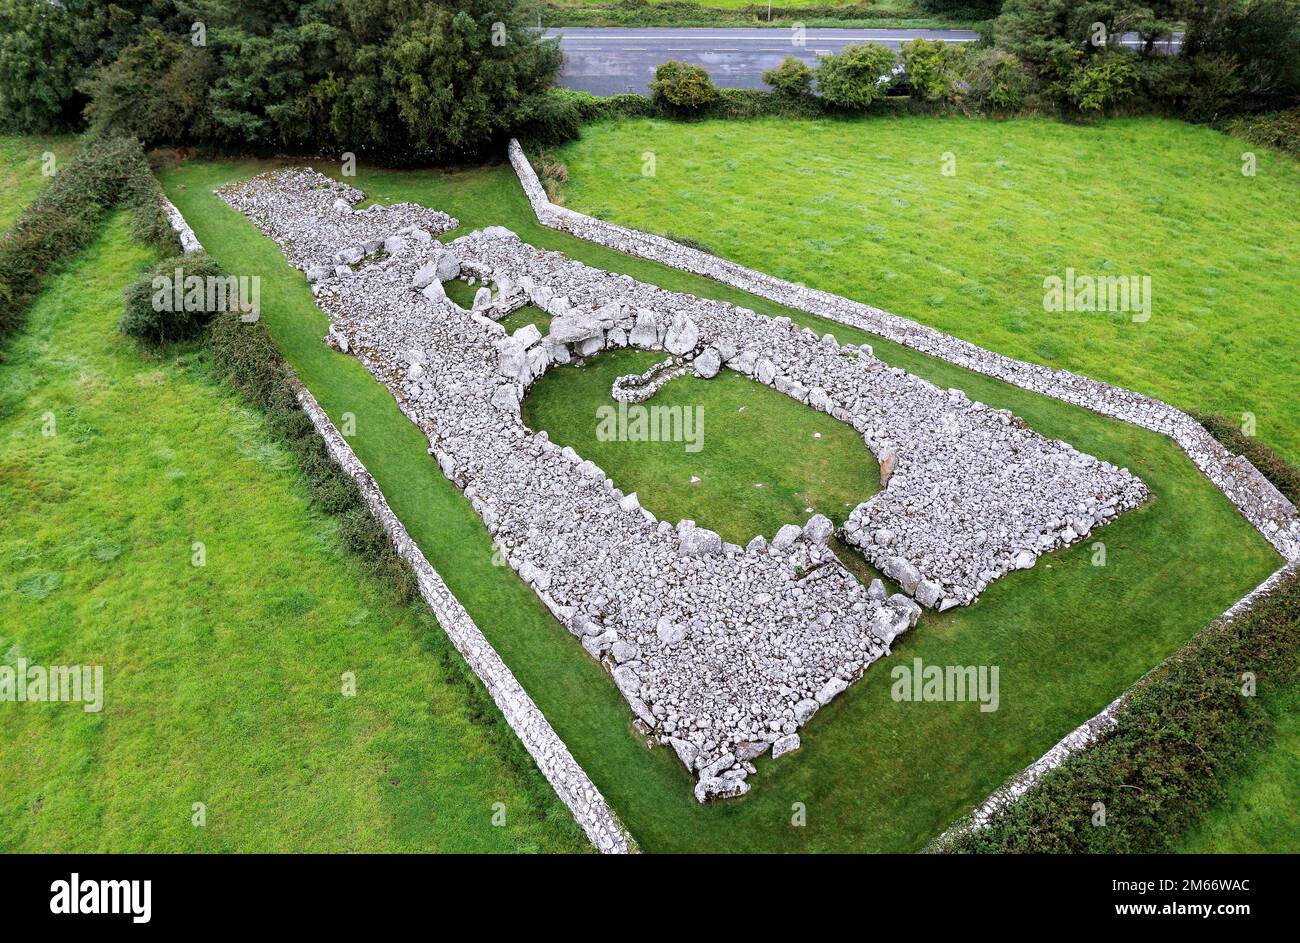 Creevykeel prähistorischer jungsteinzeitlicher Hof Cairn Begräbniskammer Komplex nahe Cliffony, County Sligo, Irland. Zwischen 4500 und 6000 Jahre alt Stockfoto